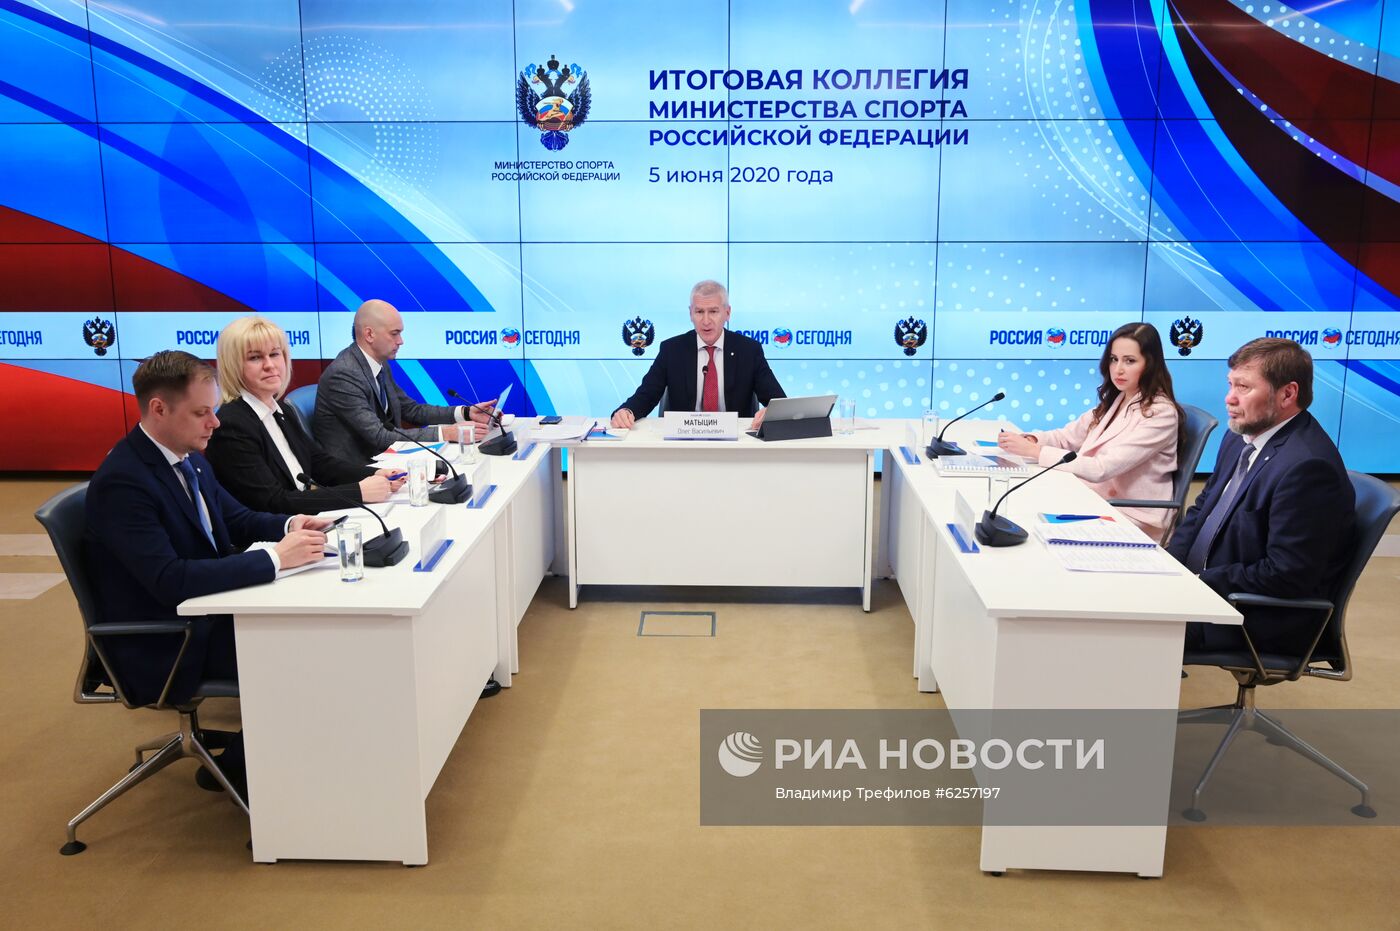 Итоговое заседание коллегии Минспорта России